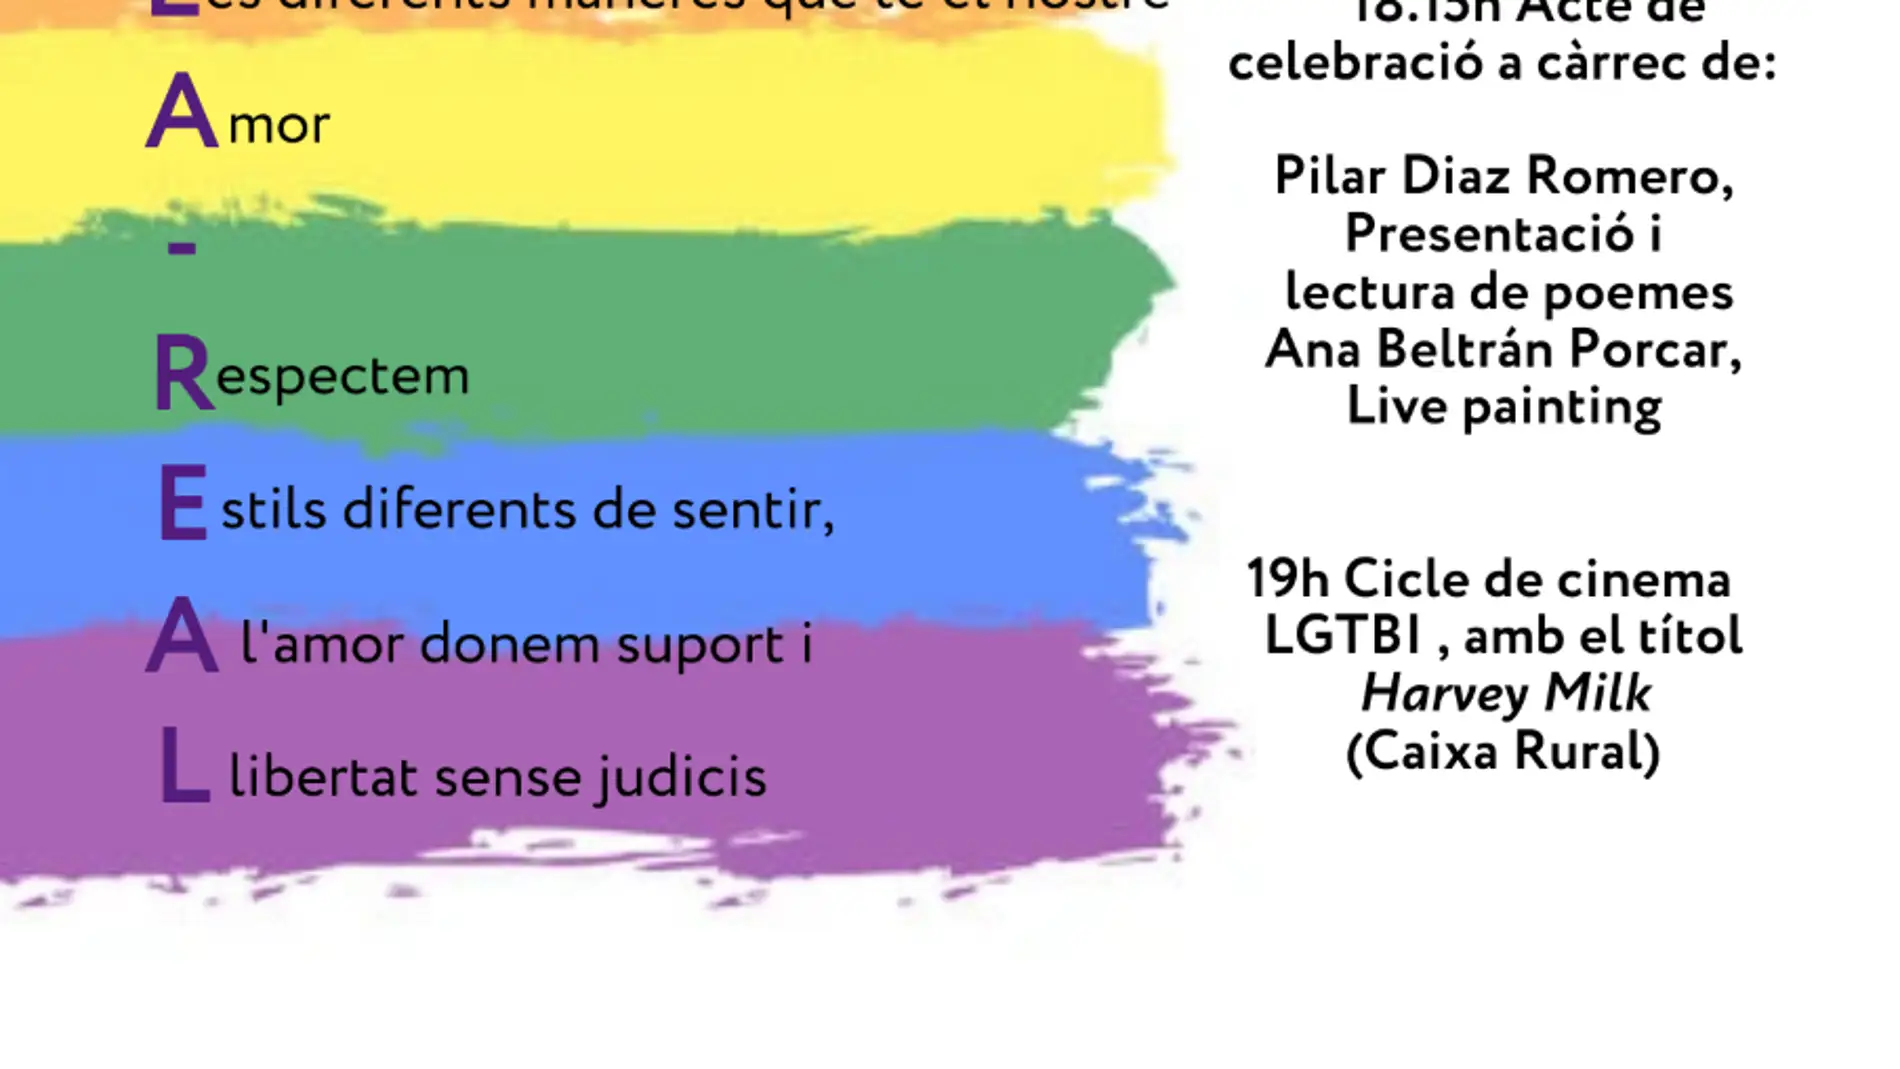 Vila-real conmemora el Día Internacional del orgullo LGTBI+